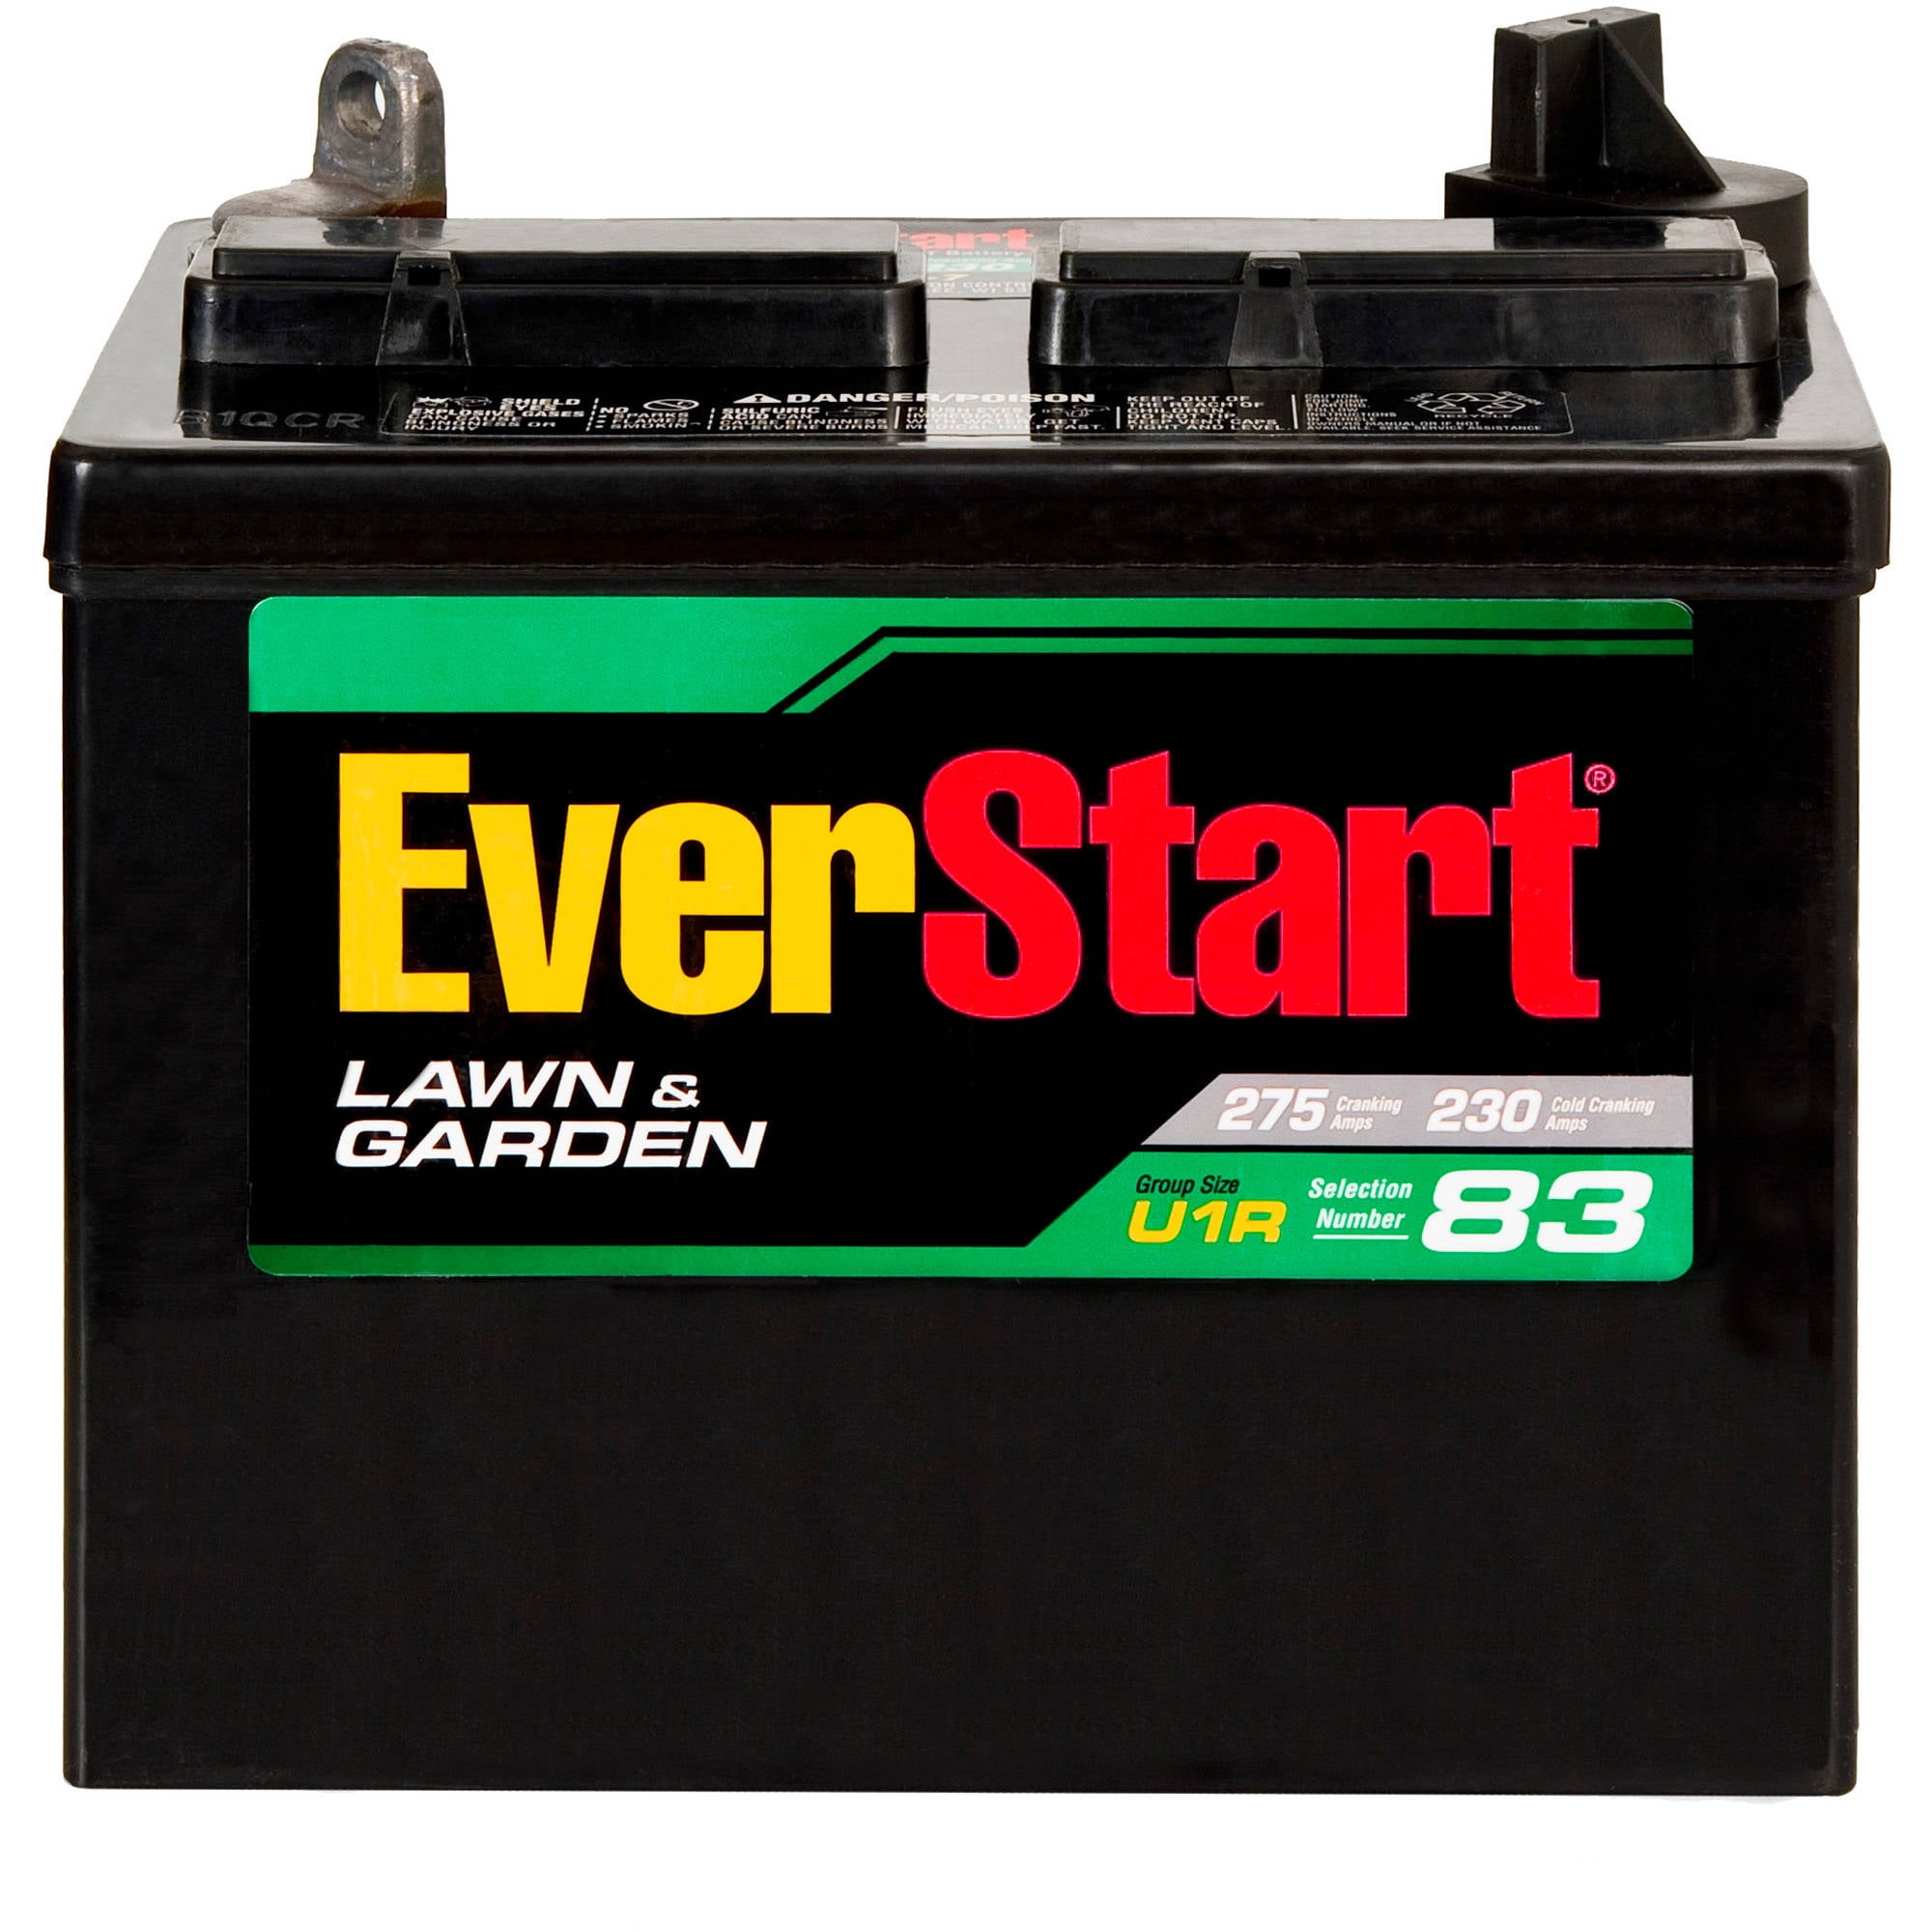 Everstart Lawn Garden Battery U1r 7